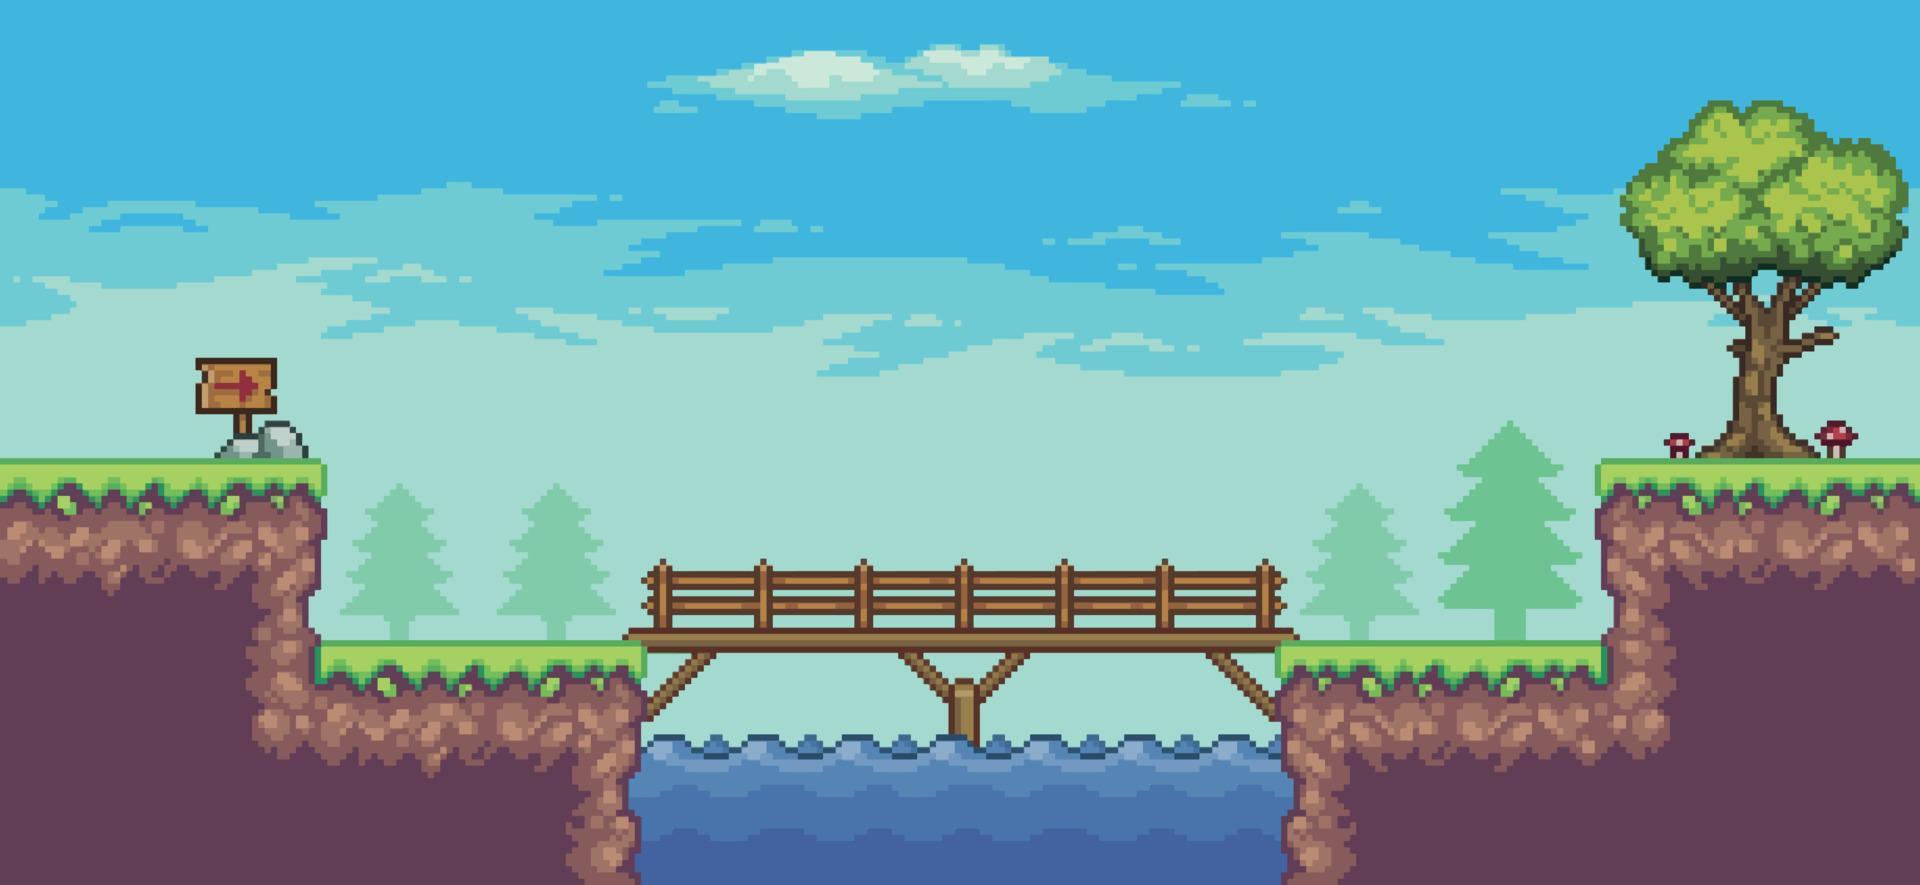 pixel art arkadspelscen med träd, sjö, bro, staket, bräda och moln 8 bitars vektorbakgrund vektor